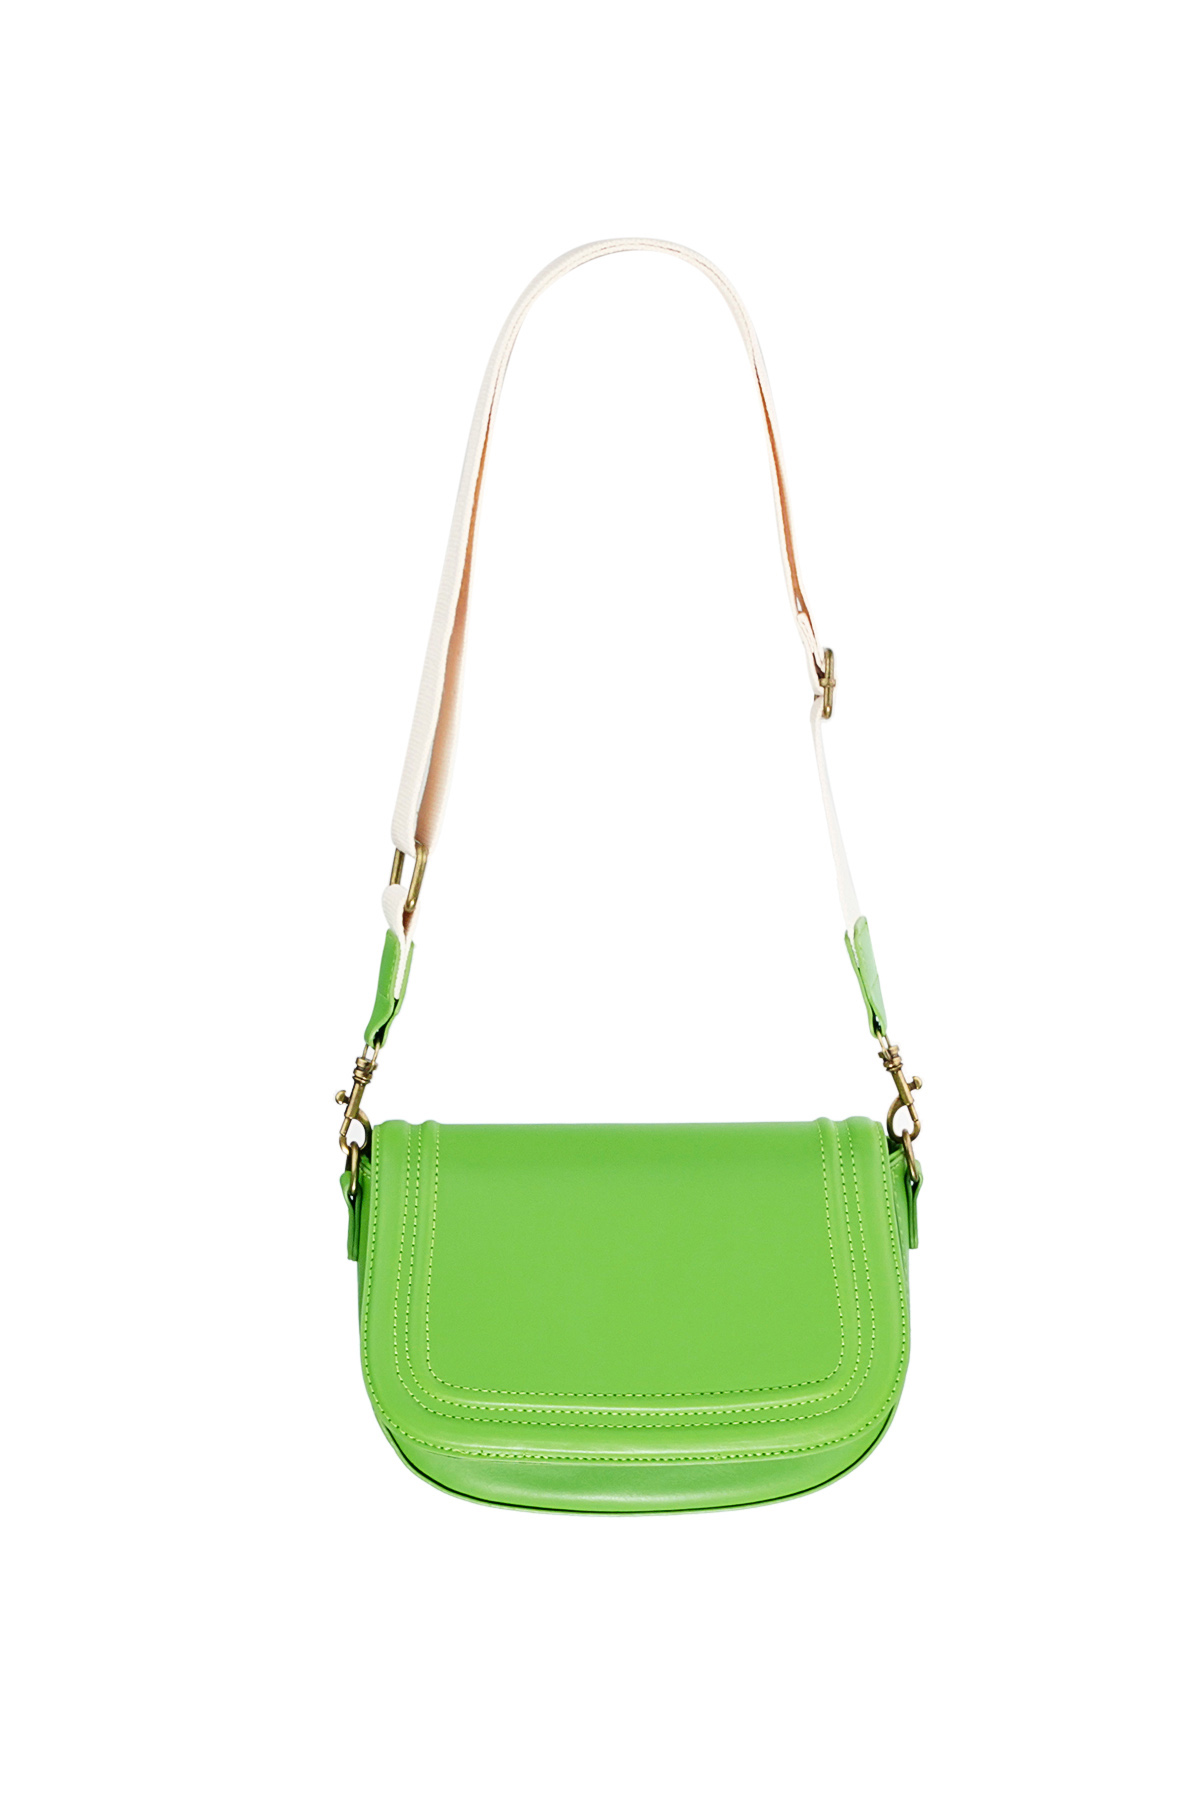 Parlak parlak çanta - yeşil 